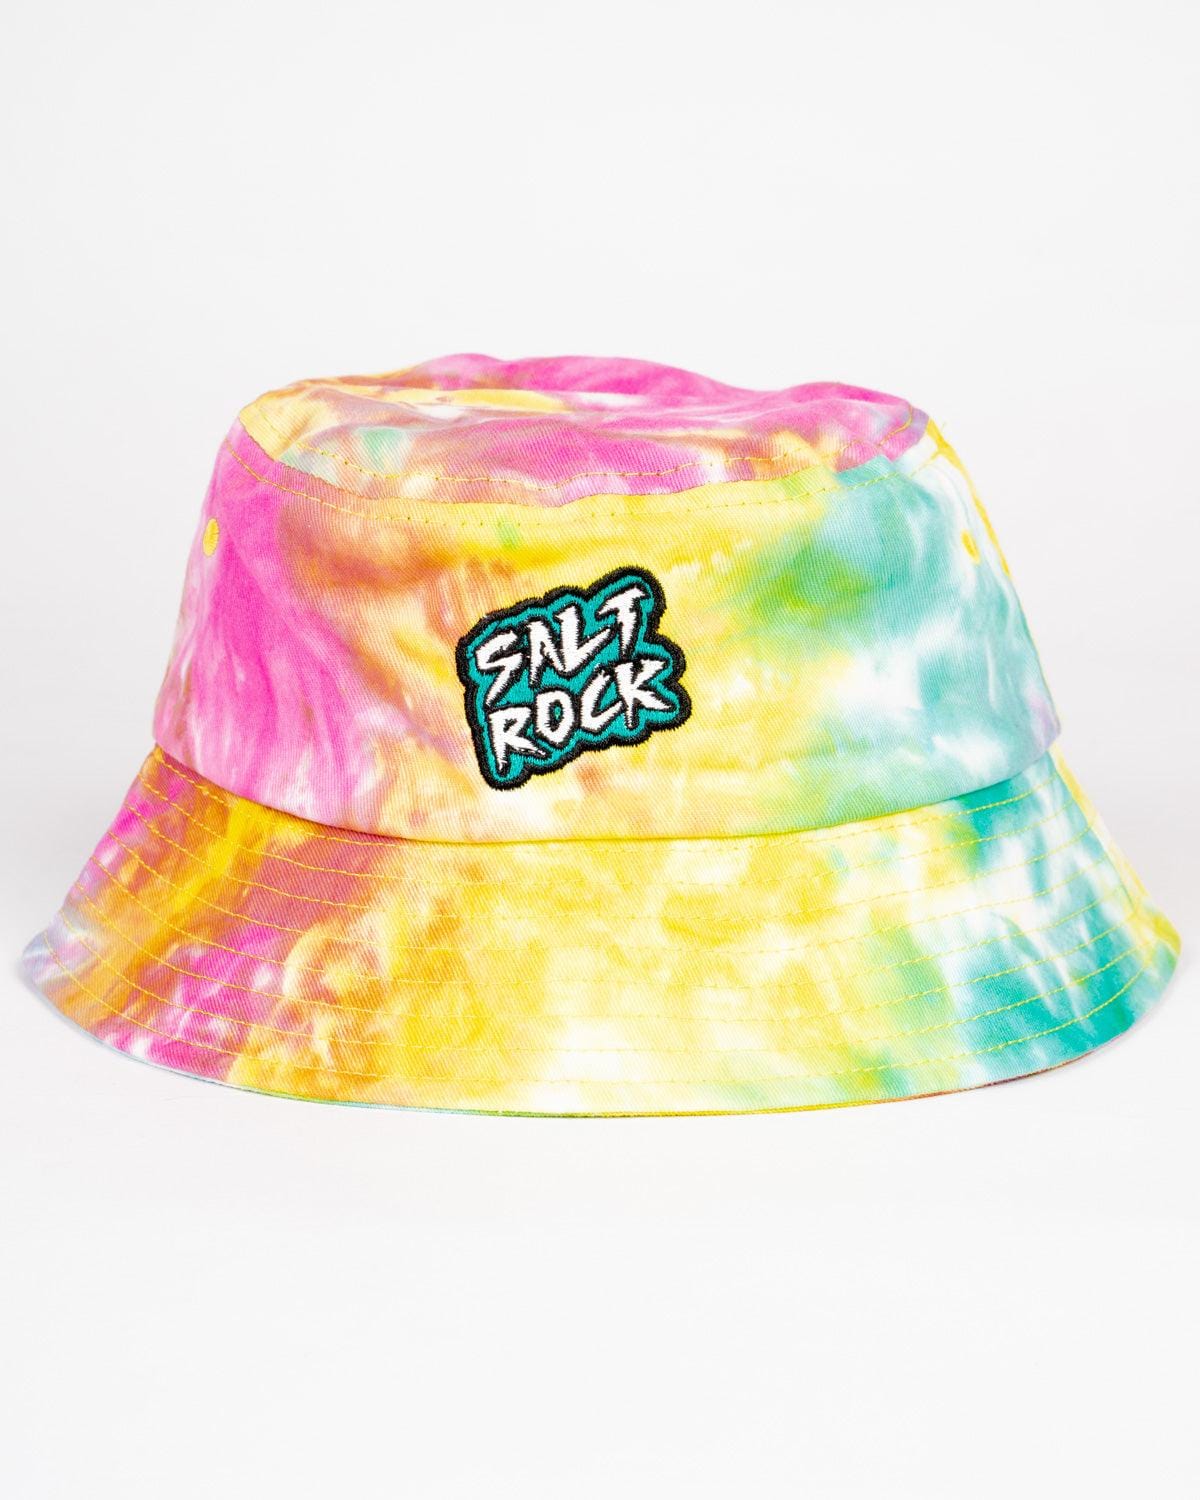 Socal  - Kids Tie Dye Bucket Hat - Multi